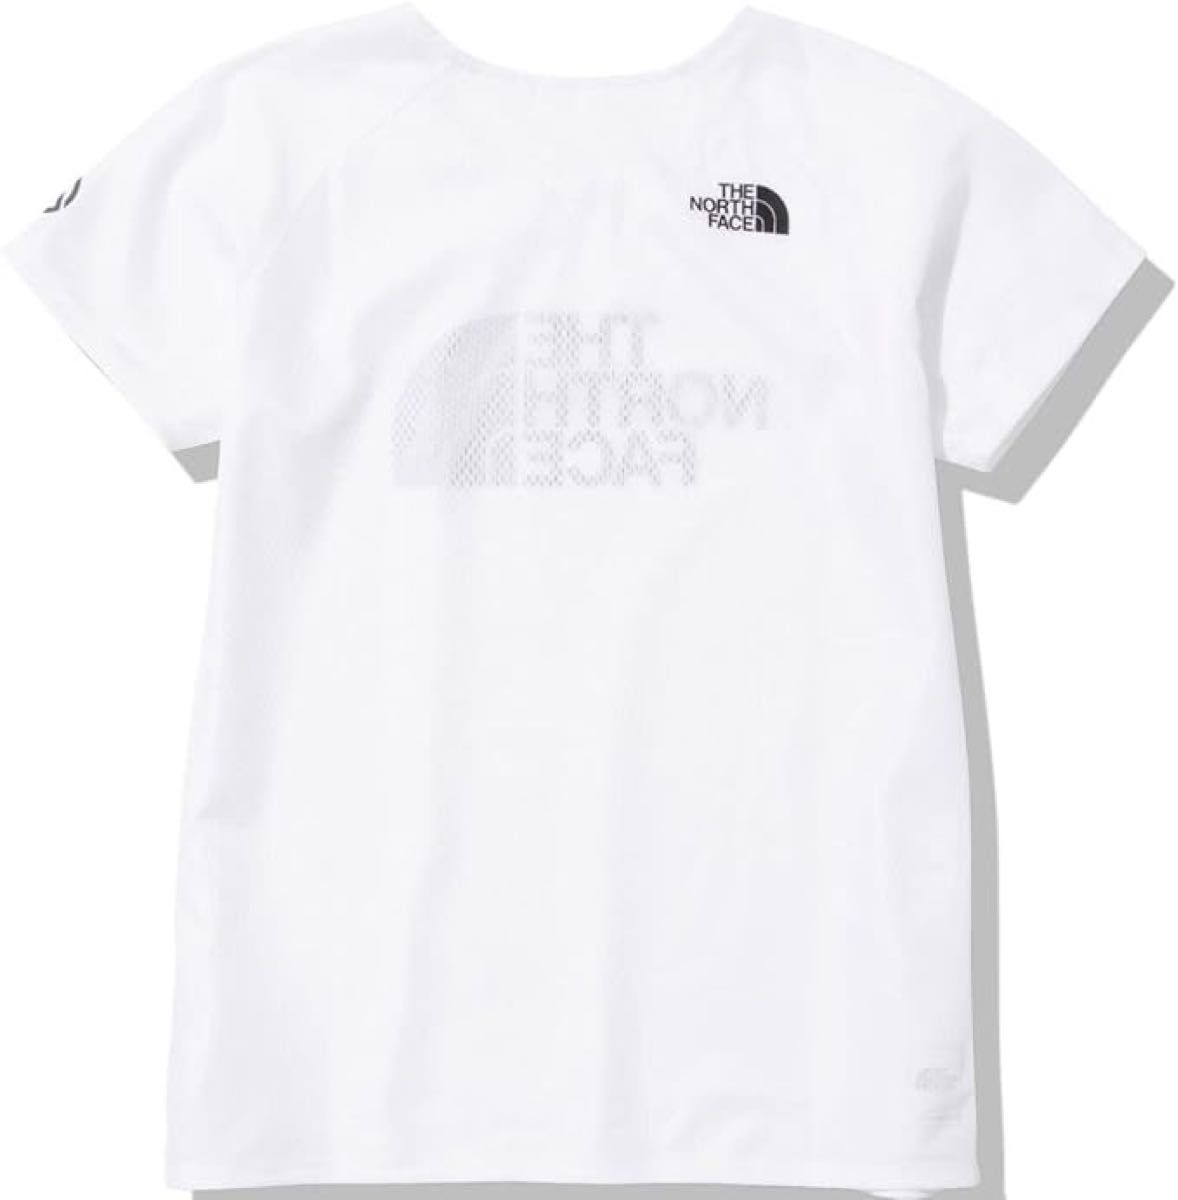 THE NORTH FACE ザノースフェイス 半袖Tシャツ ショートスリーブハイパーベントクルー ホワイト(白)レディースM新品